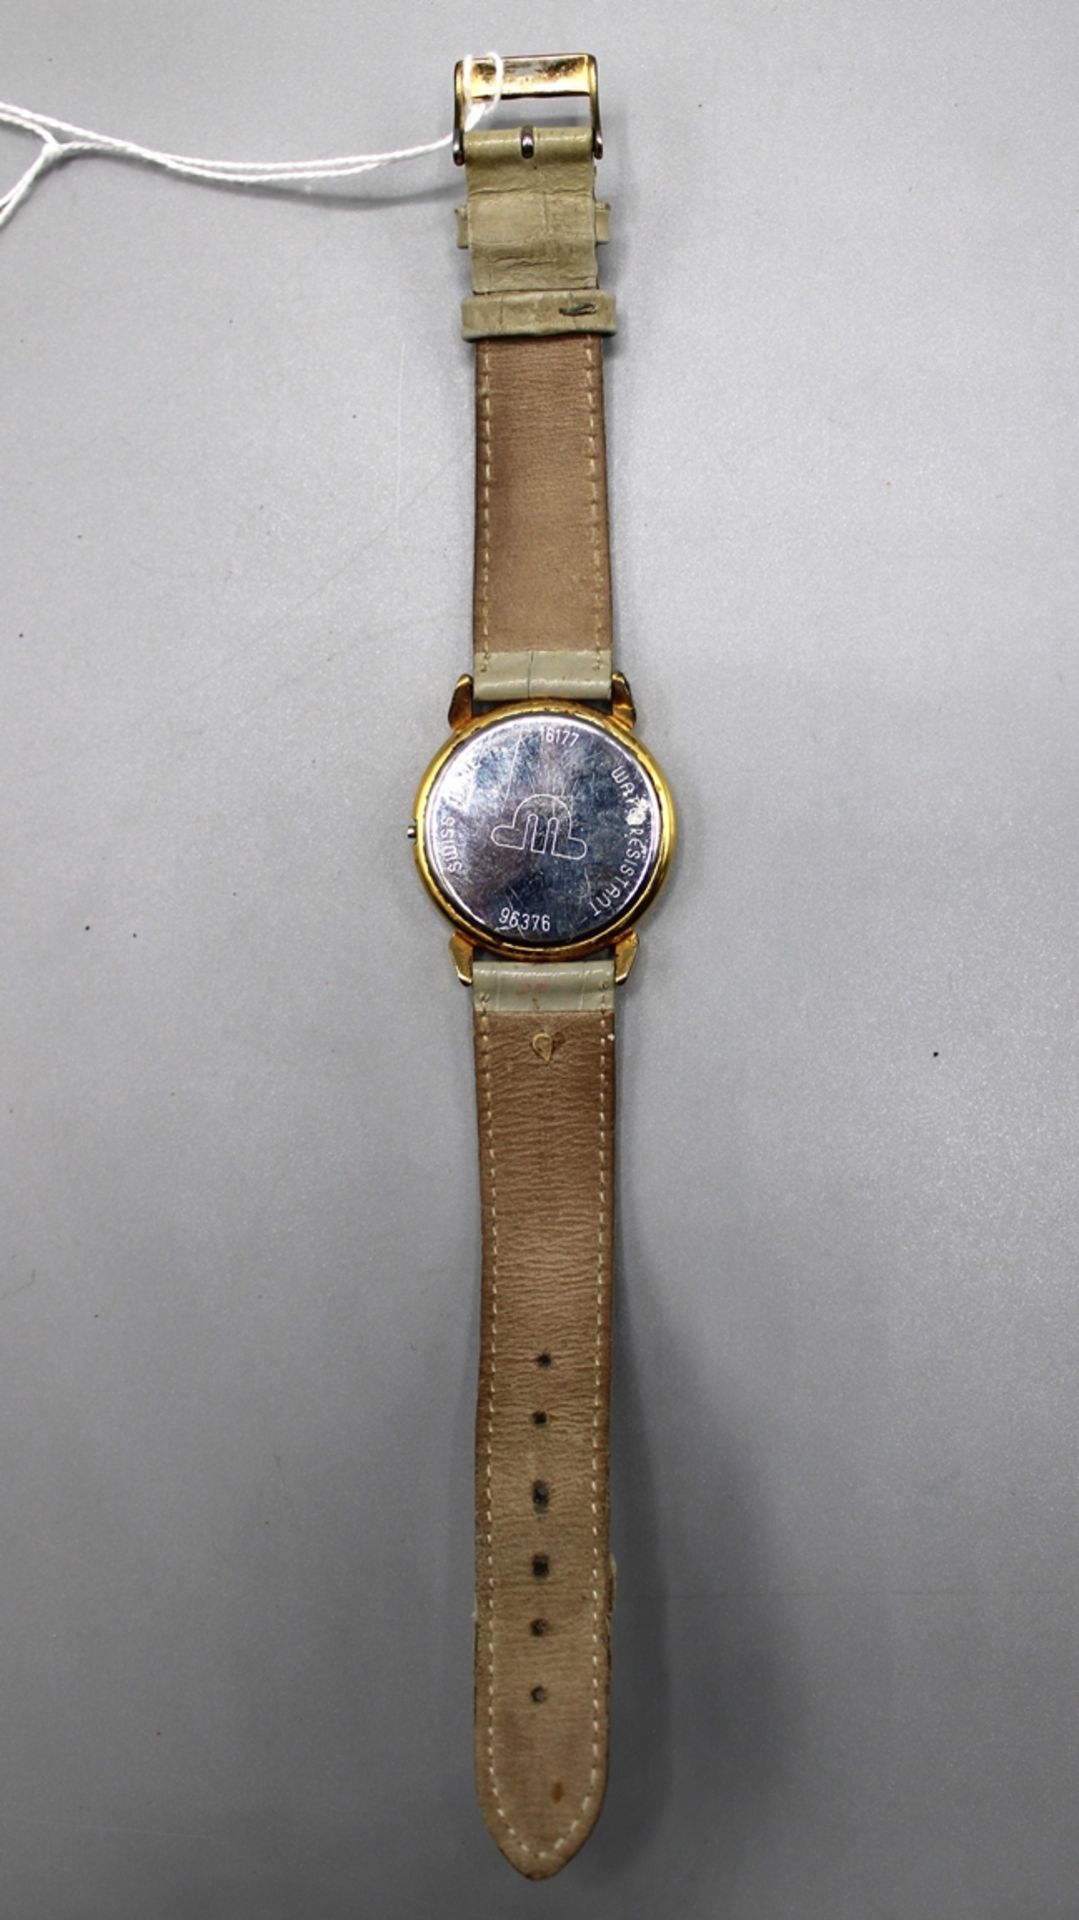 Maurice Lacroix Uhr 96376, Ø ca. 33,7 mm, ungetestet, Krone fehlt - Bild 3 aus 3